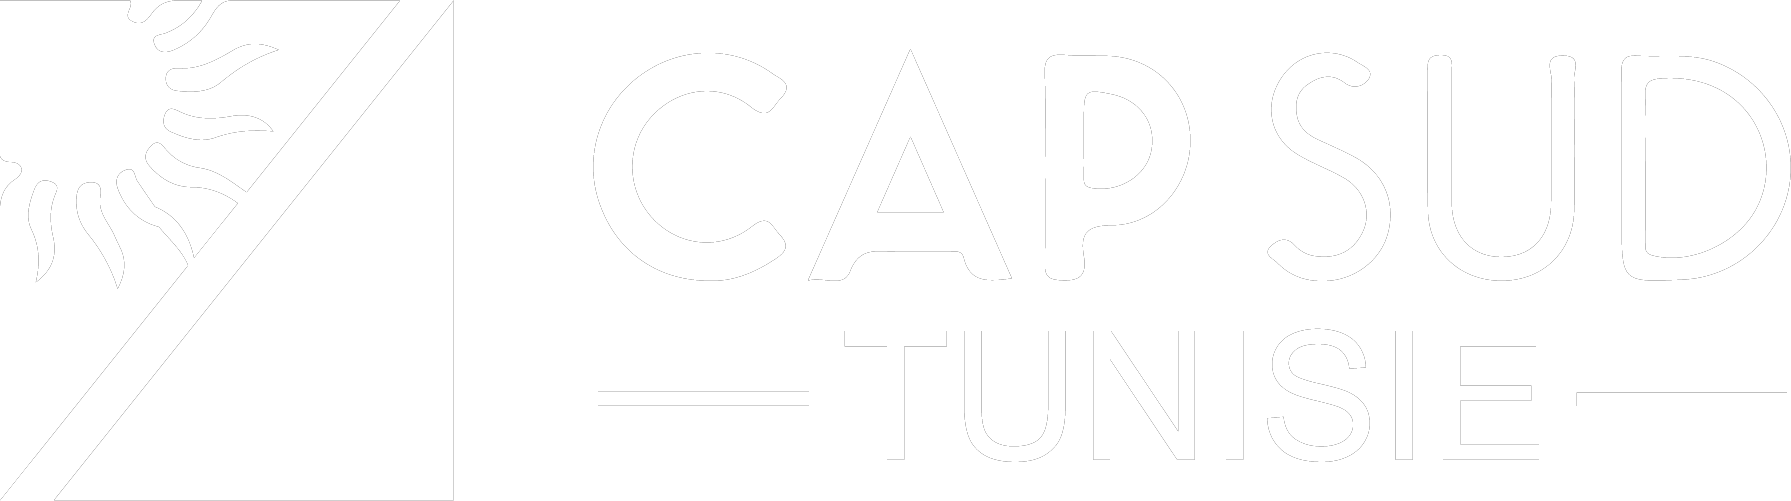 CAPSUD Tunisie